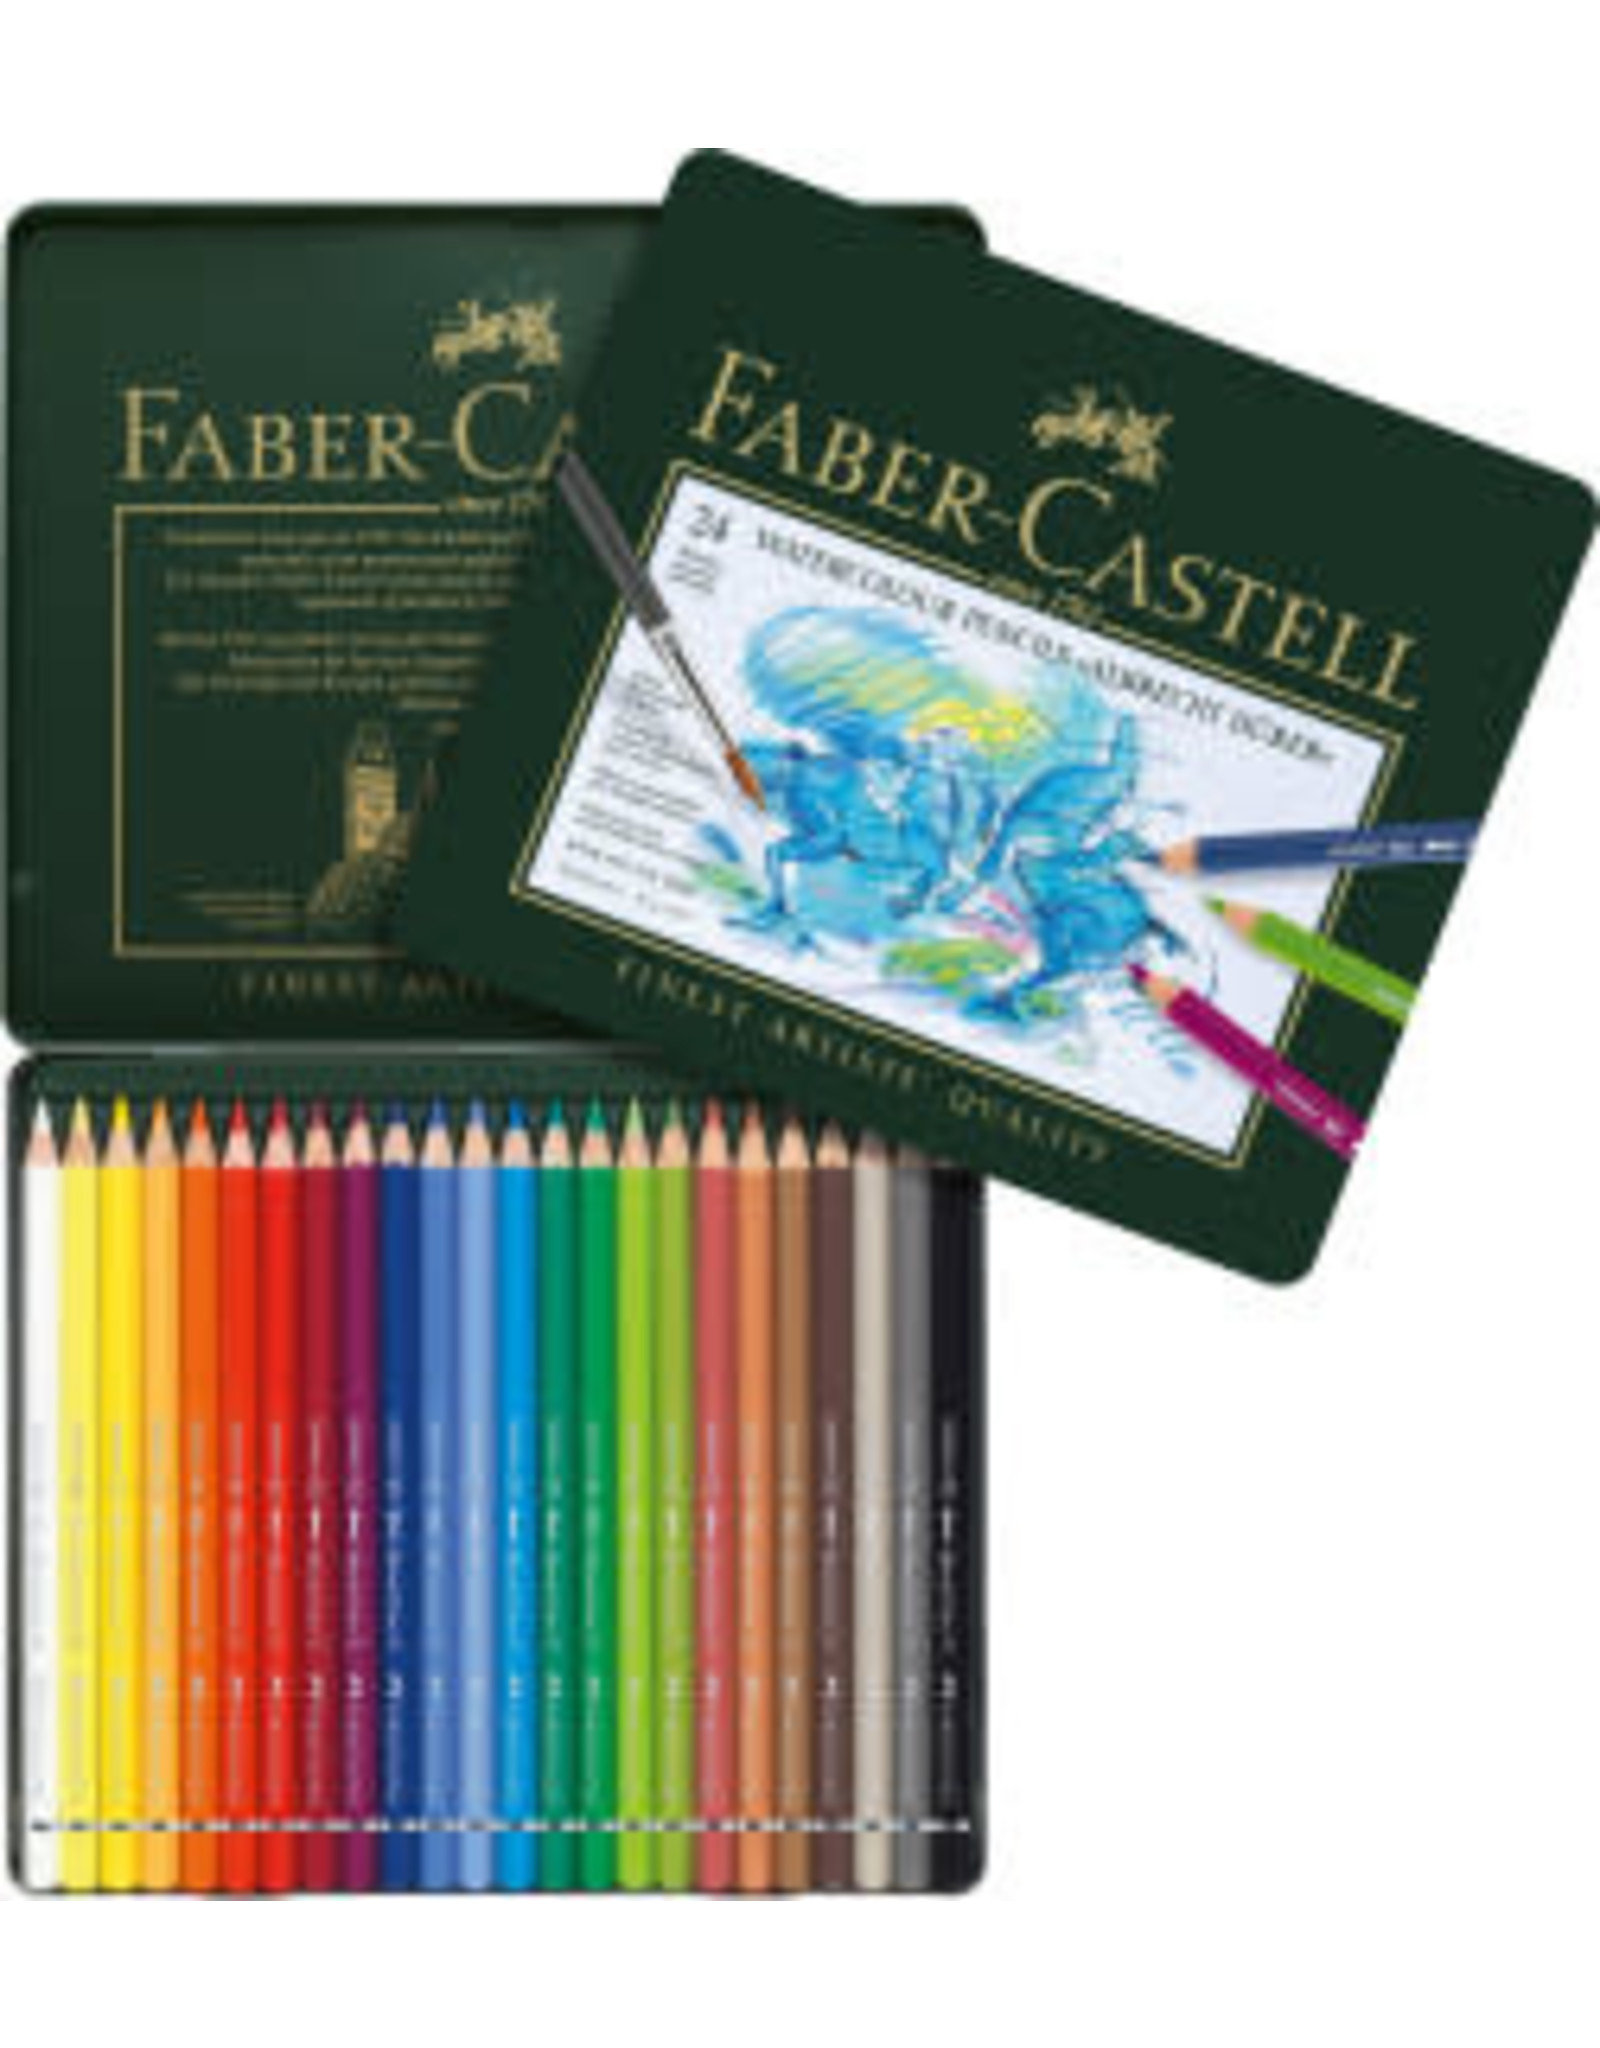 FABER-CASTELL Faber-Castel Albrecht Durer Artist Watercolor Pencils in A Tin 24 Pack, Assorted